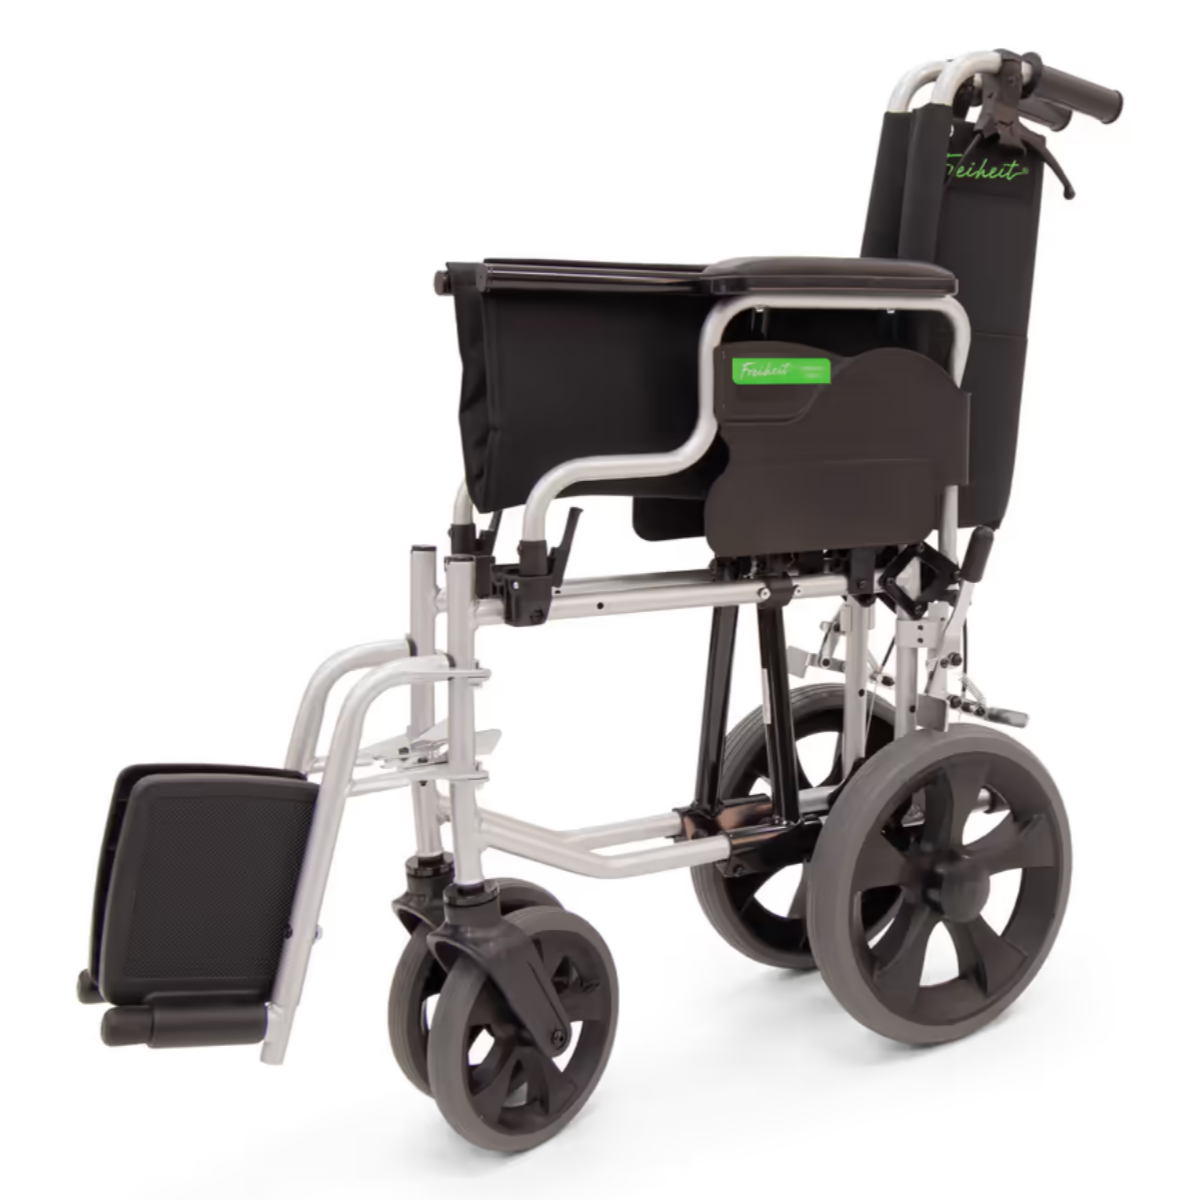 Freiheit Freedom lightweight transit wheelchair